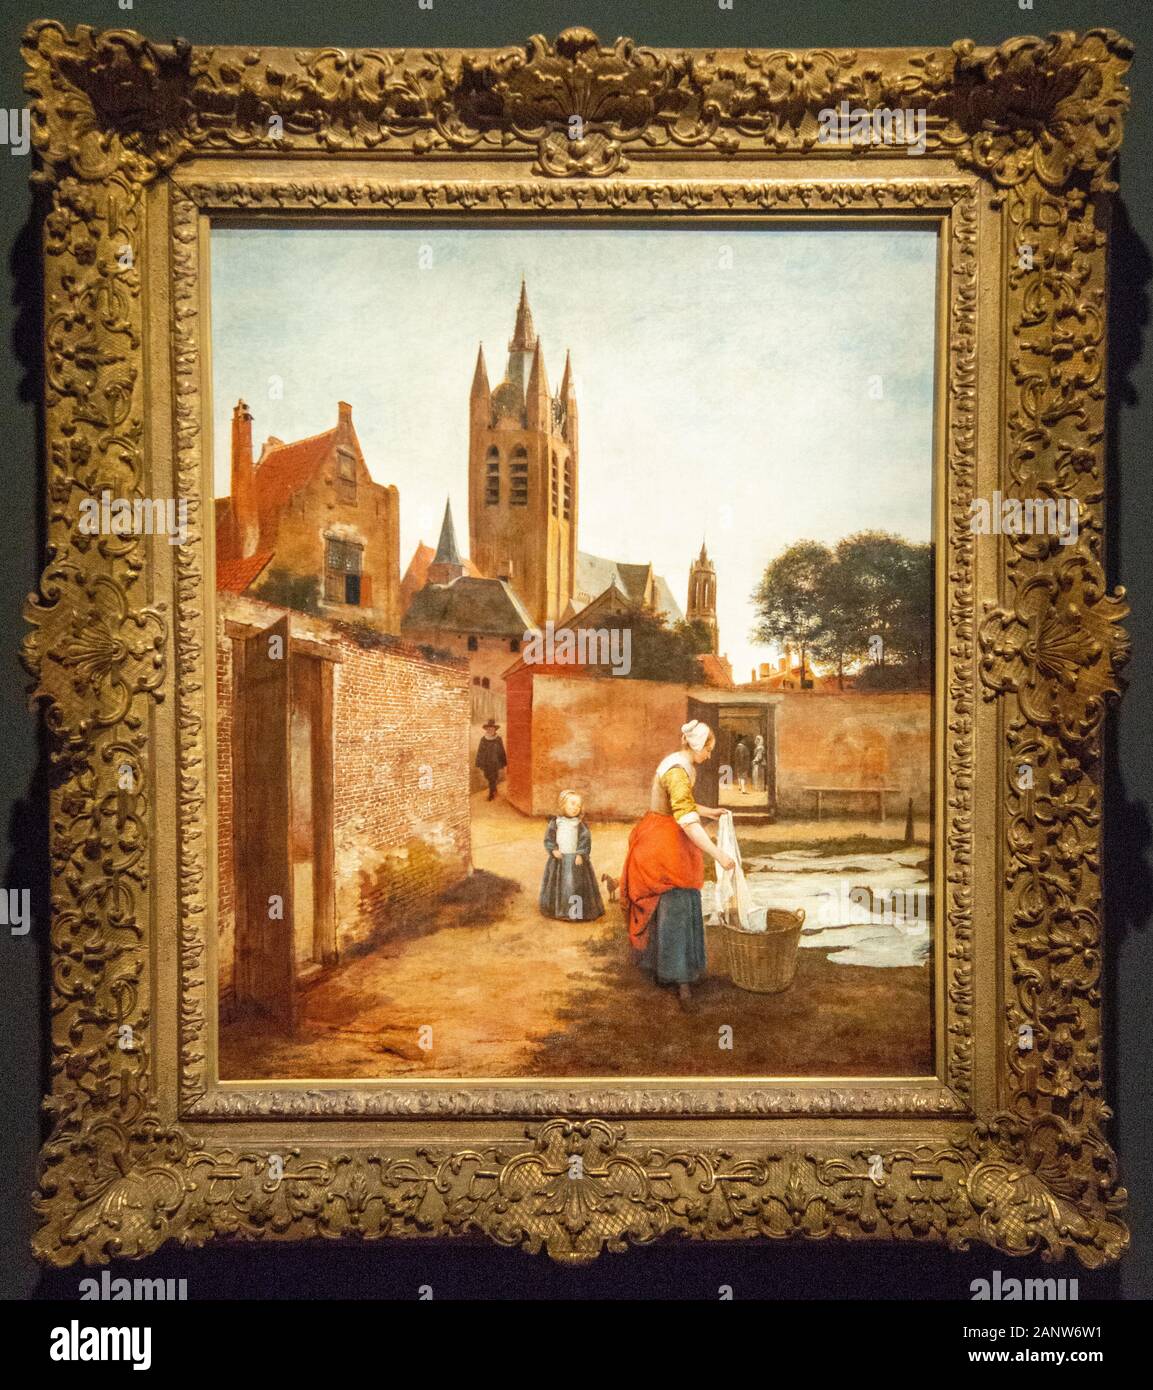 Par Pieter de Hooch, peintre hollandais du 17e siècle Banque D'Images